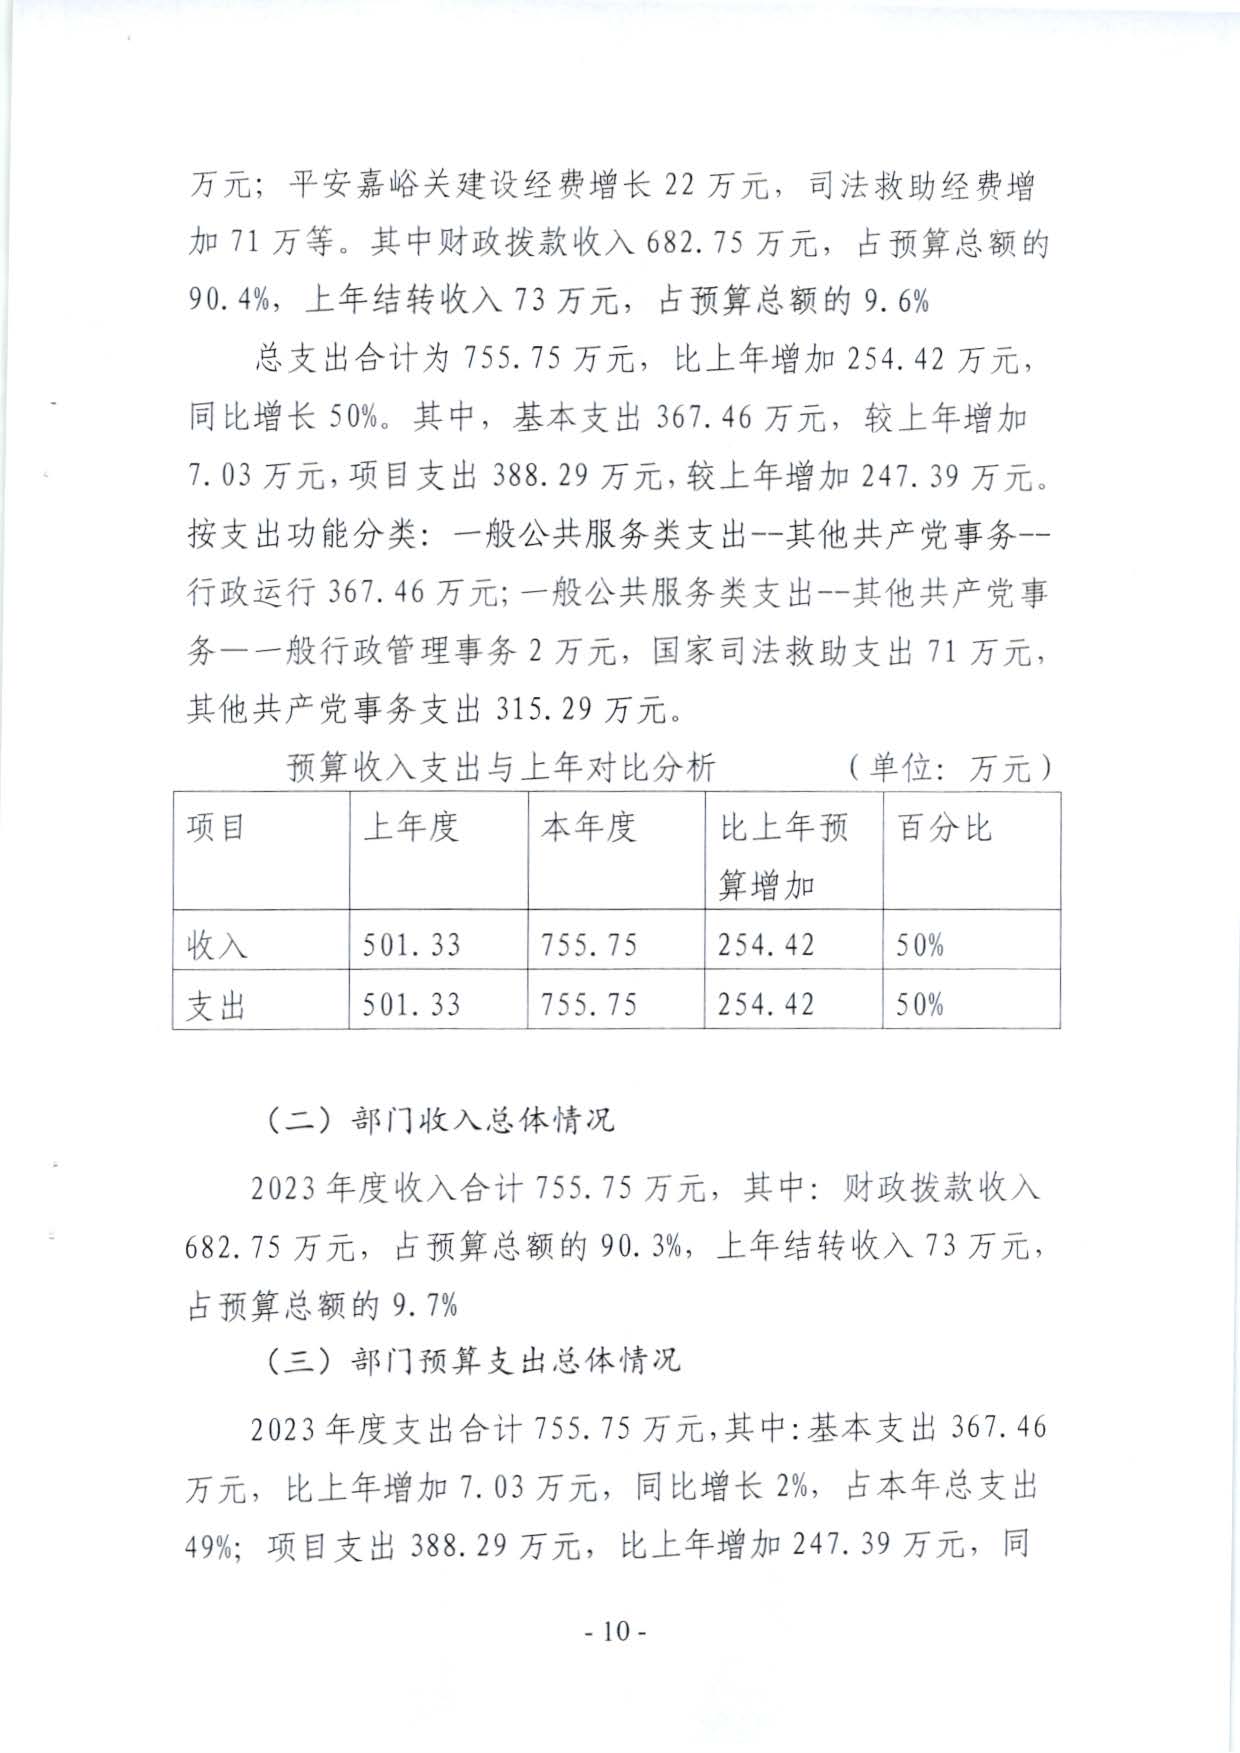 嘉峪关市委政法委2023年预算公开情况说明(1)_页面_10